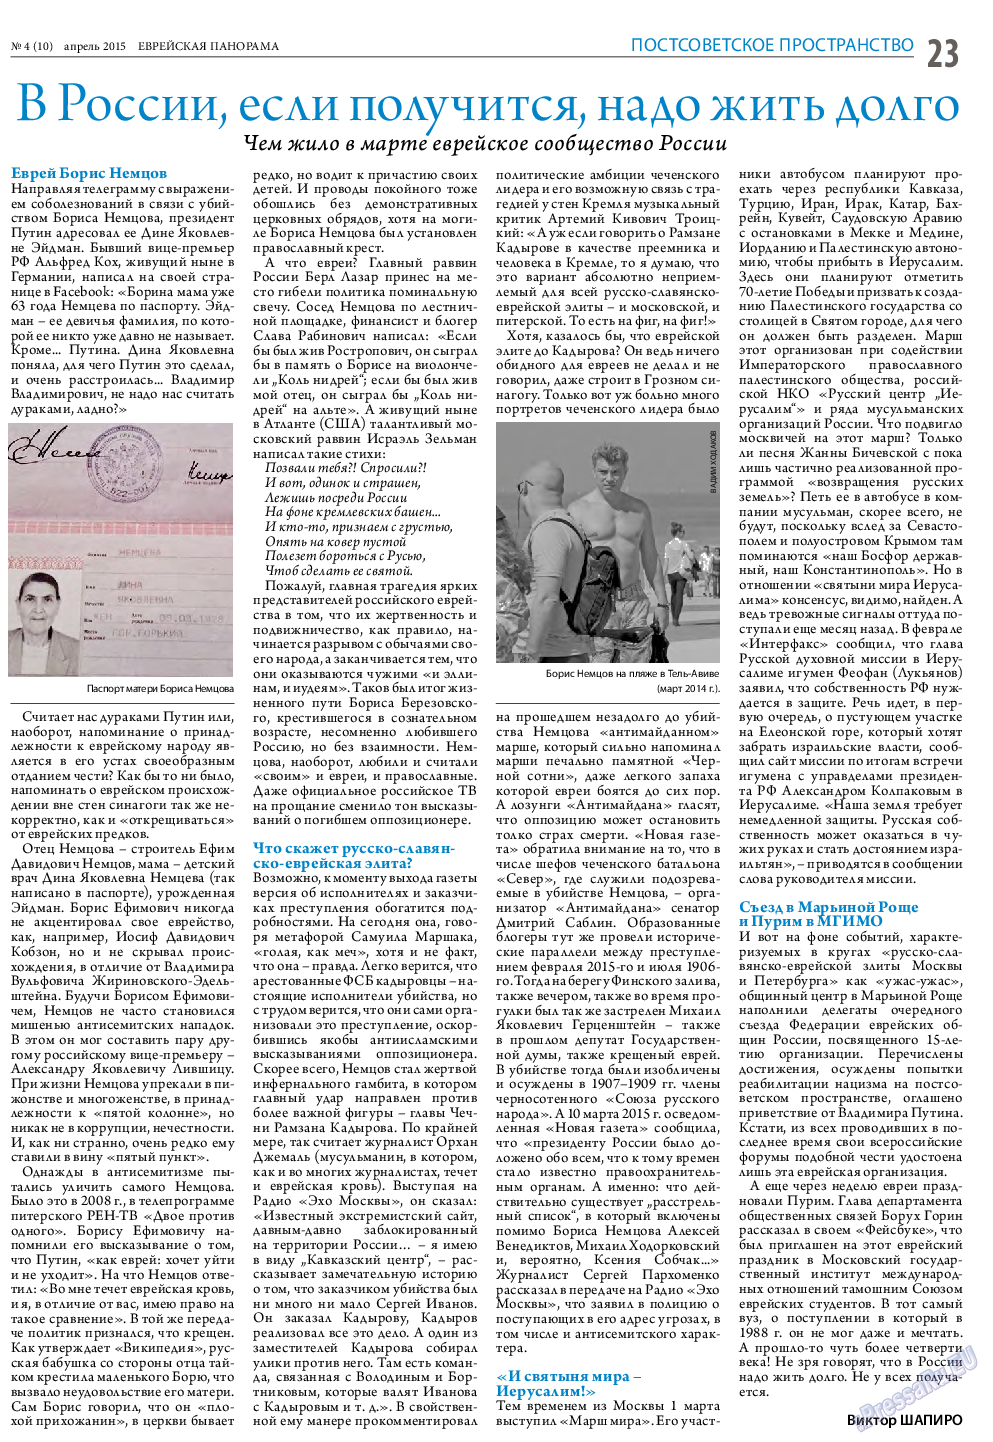 Еврейская панорама (газета). 2015 год, номер 4, стр. 23